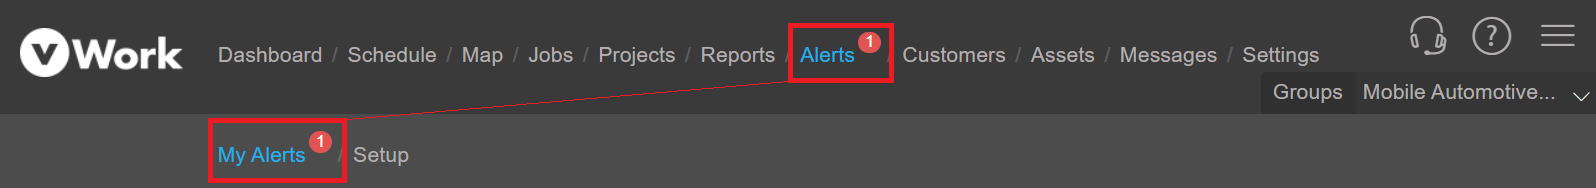 Alerts_Unread_na_pp_notifciations.png